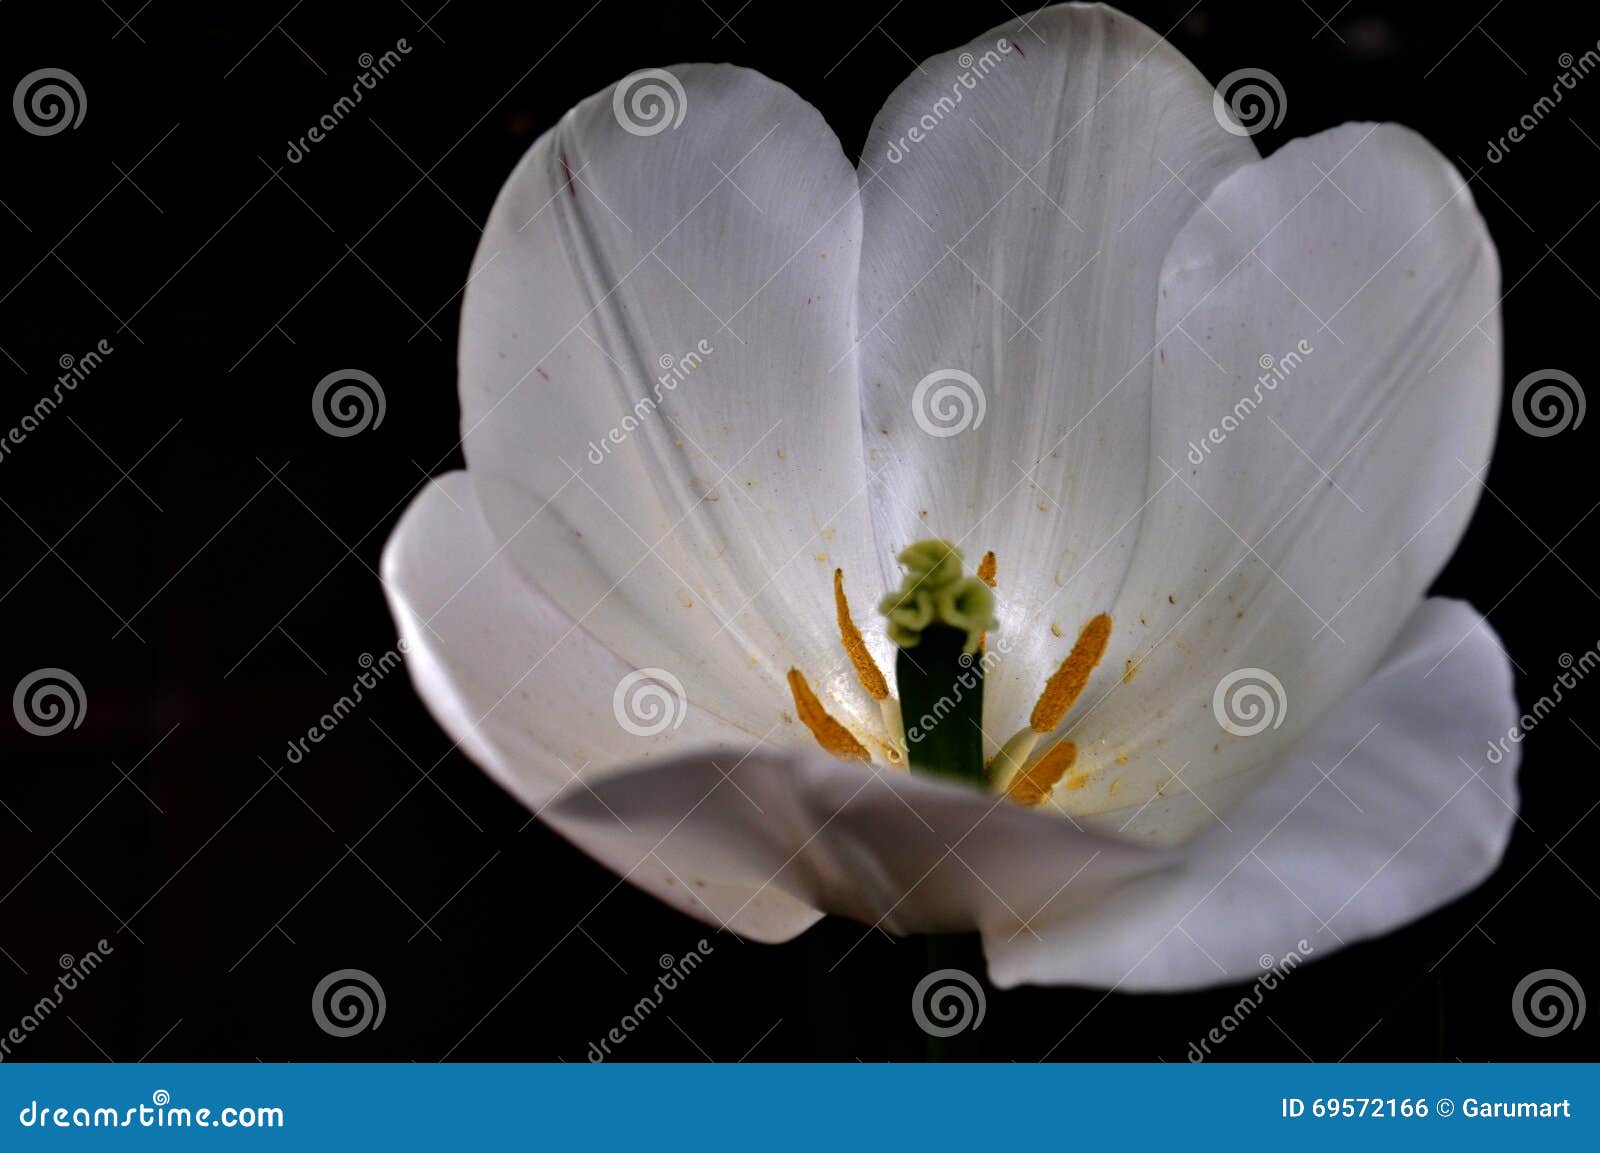 white calyx tulip